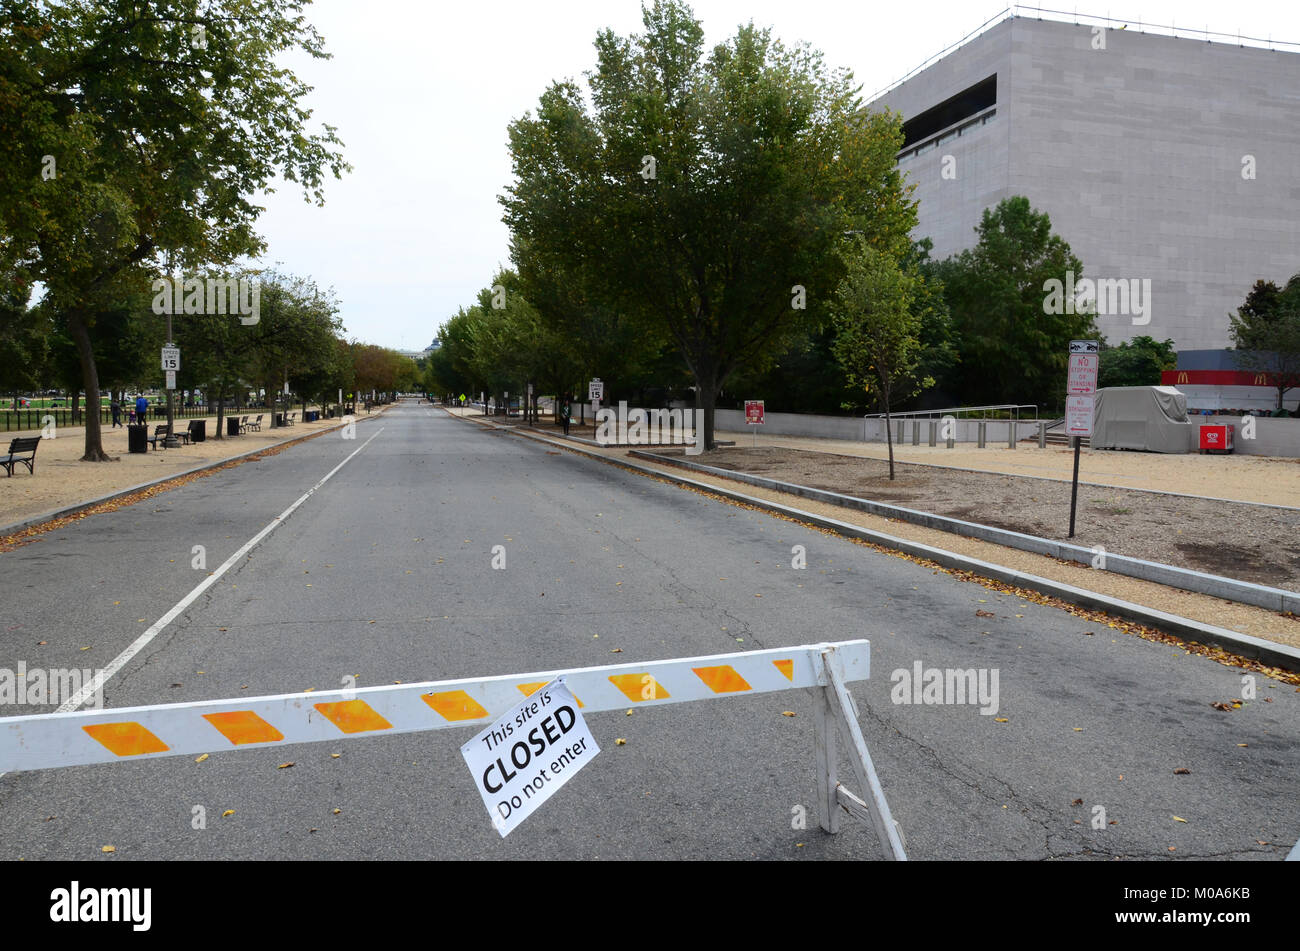 Los monumentos nacionales y museos en Washington DC, EE.UU. estuvieron cerradas durante el apagado governemnt en 2013. Foto de stock